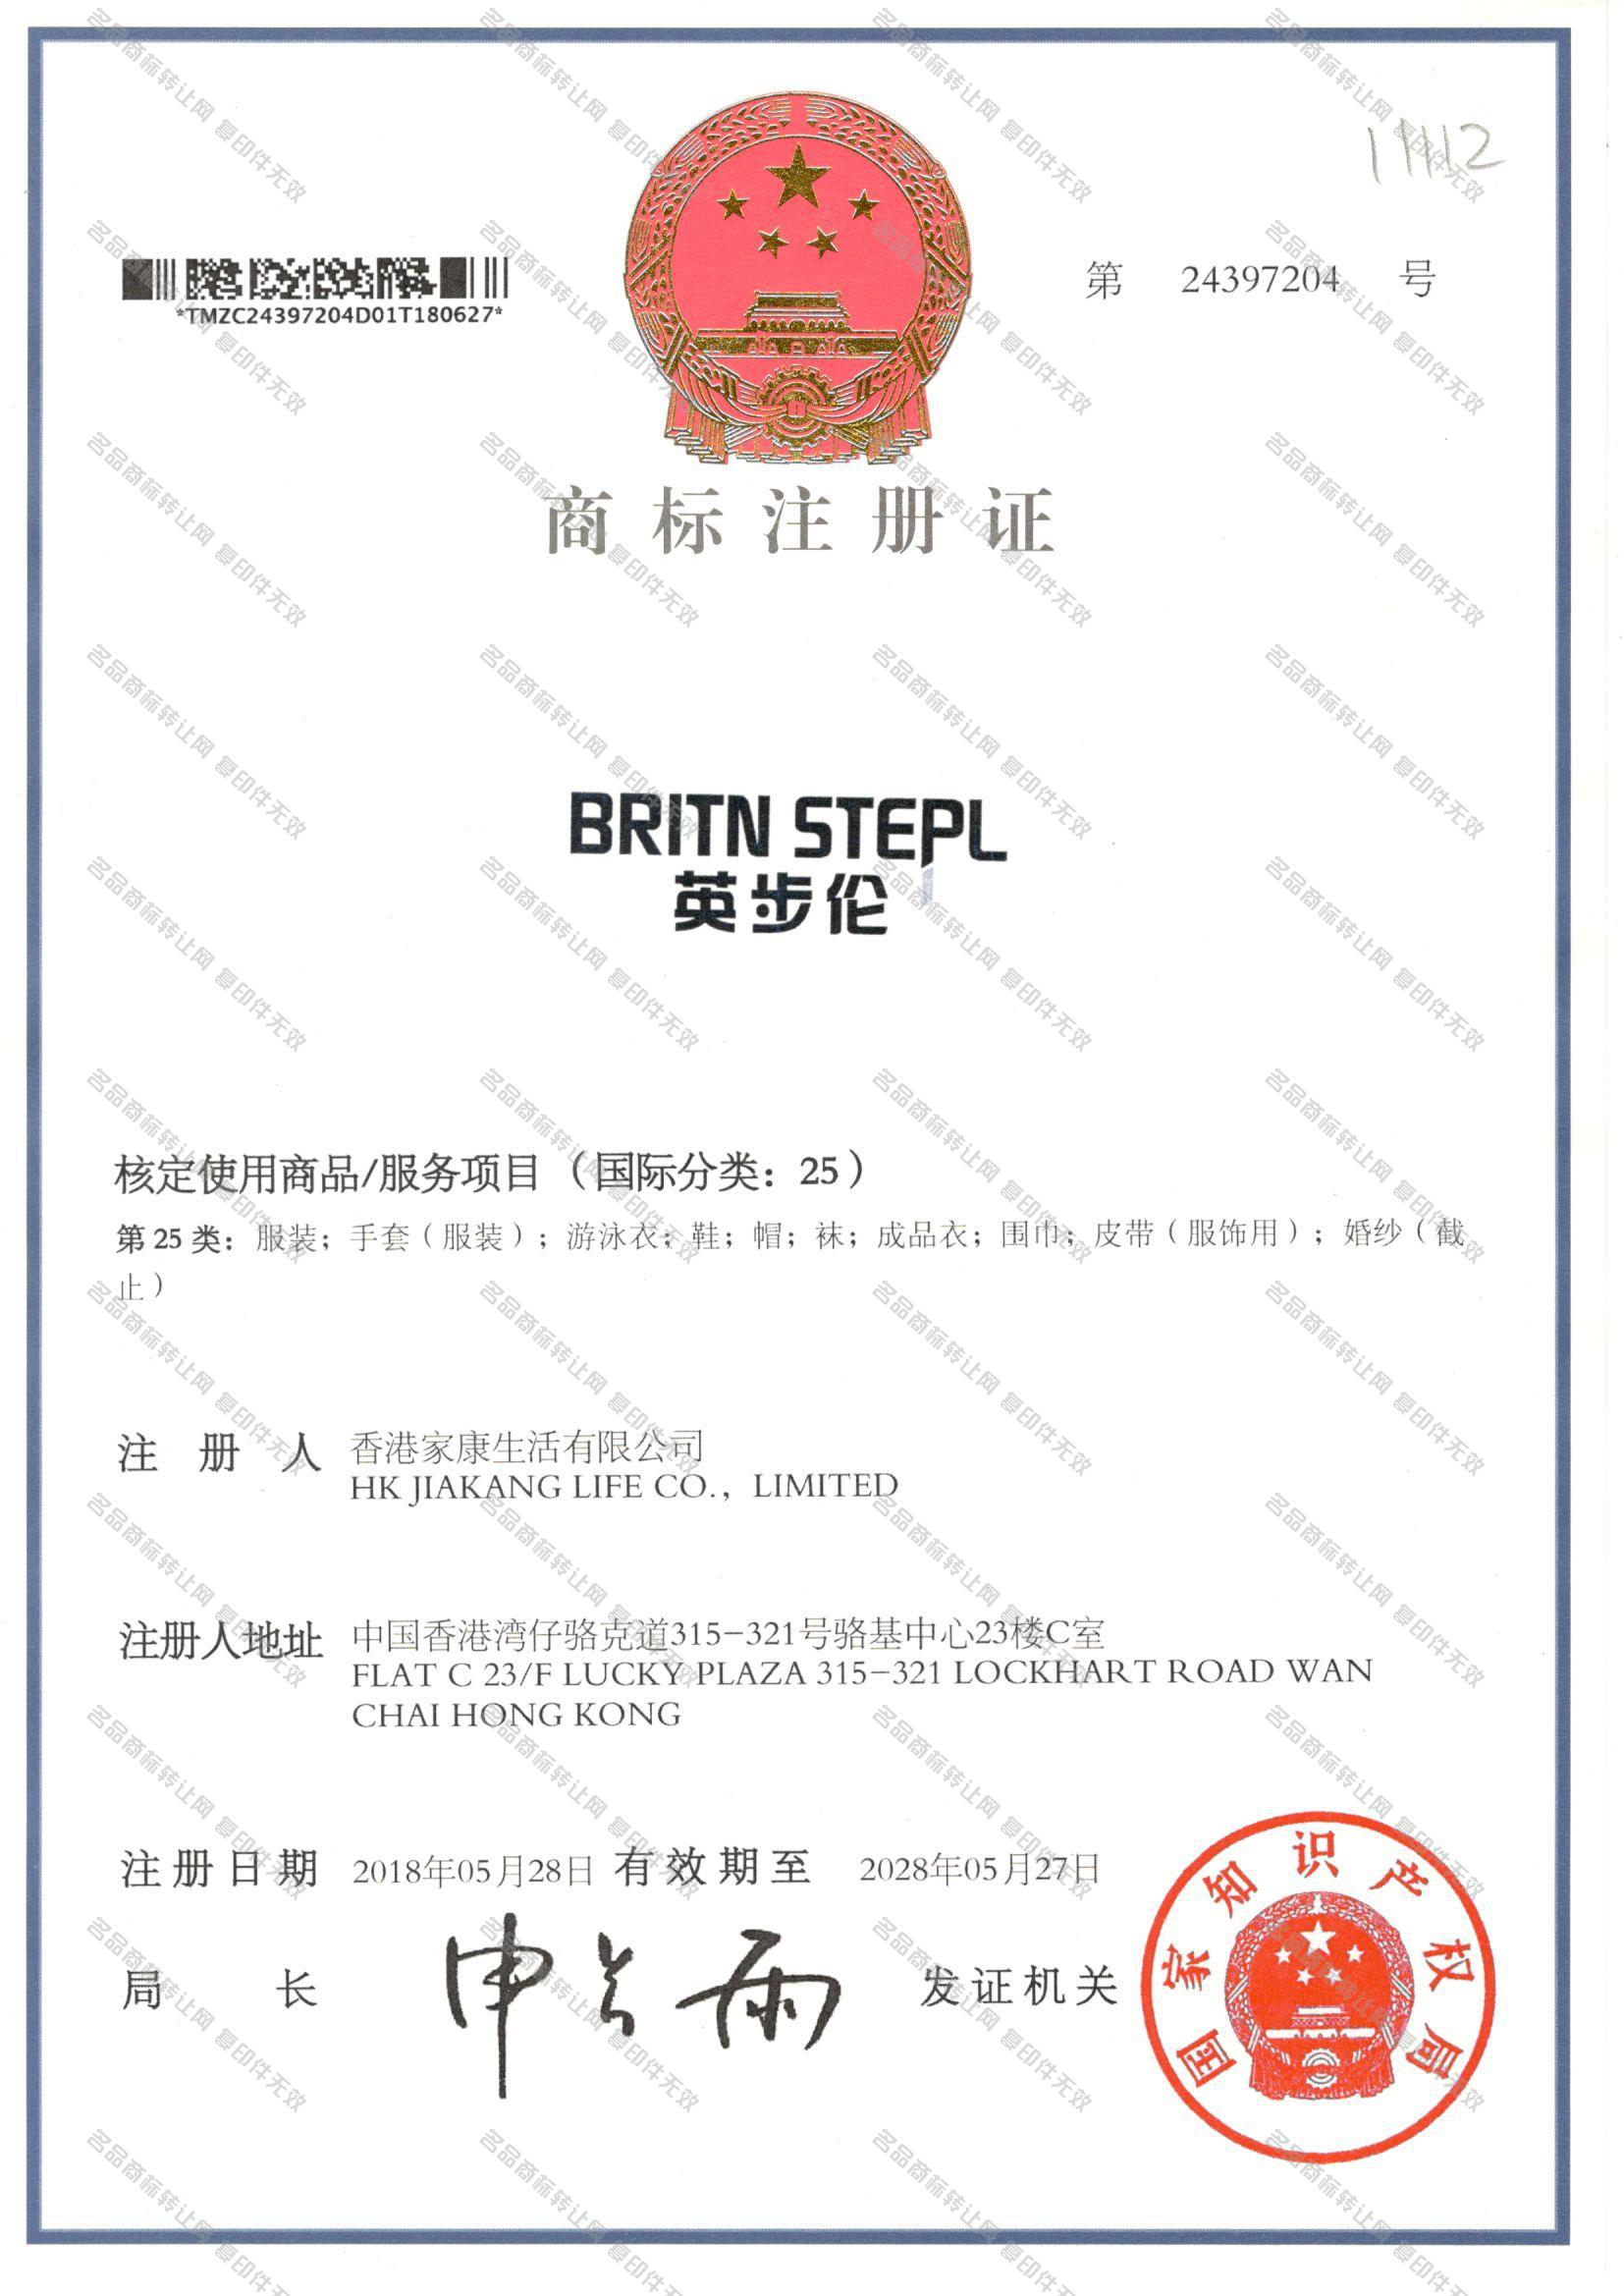 英步伦 BRITN STEPL注册证